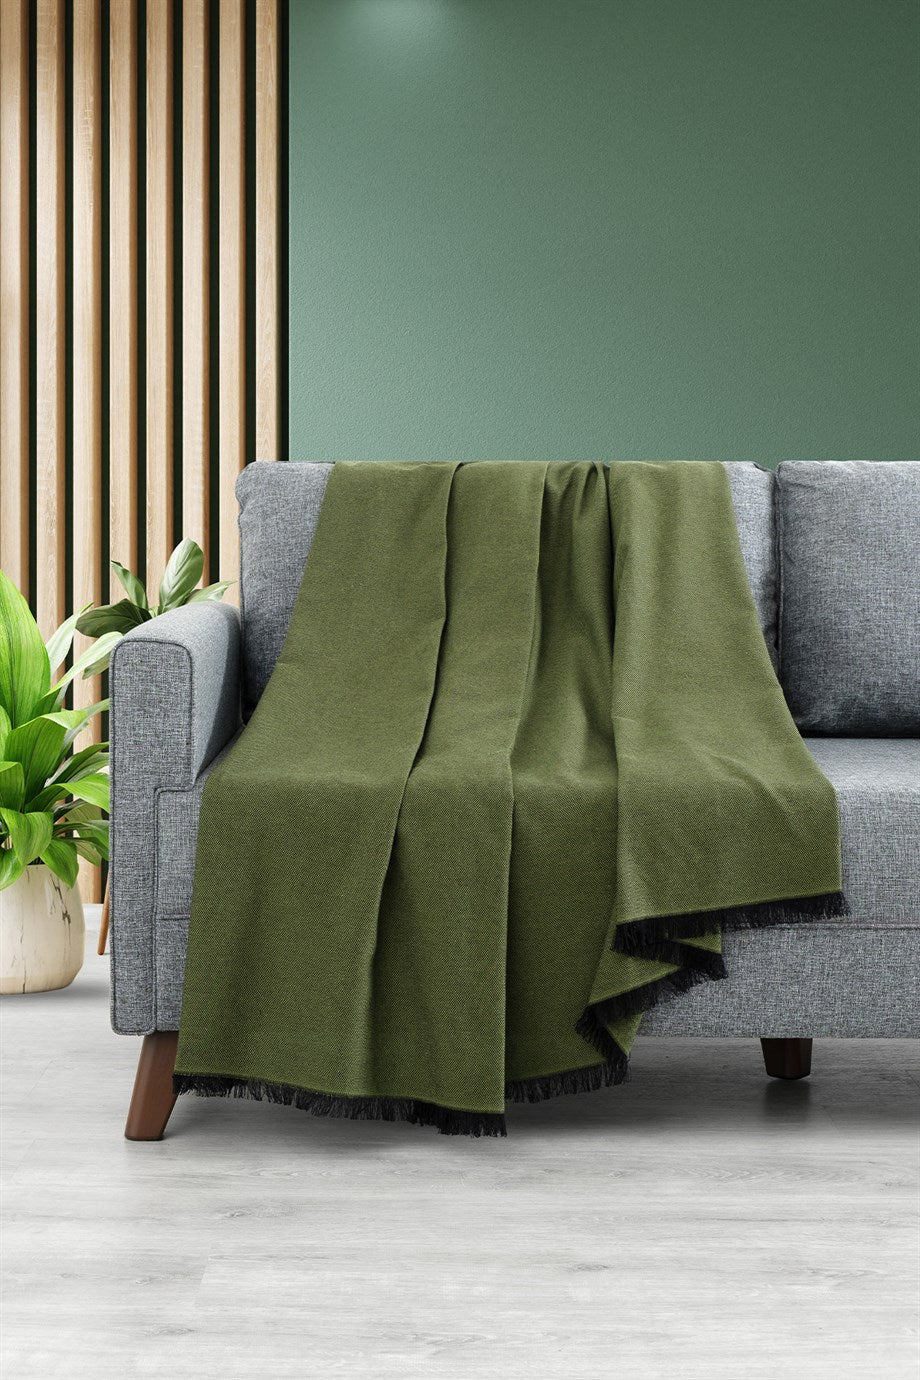 DENIZLI CONCEPT Lalin Sofa Cover Green